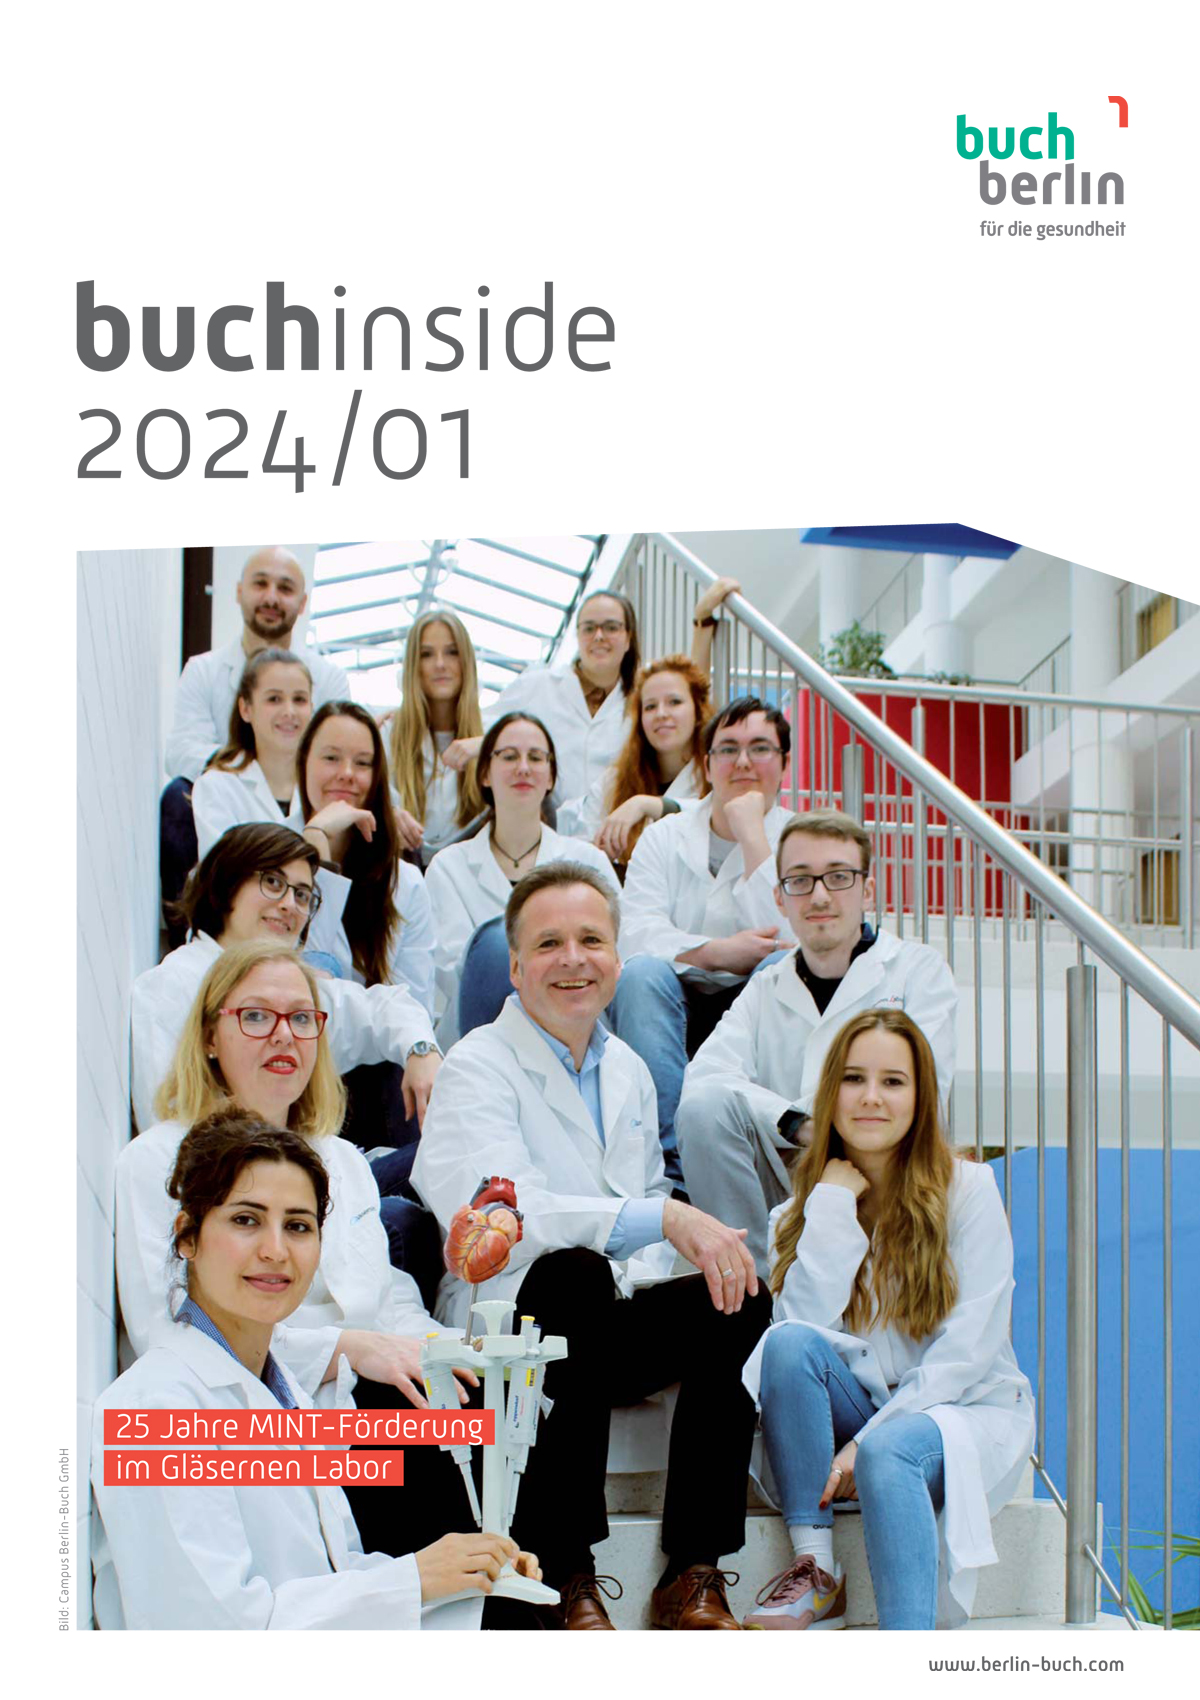 Titelbild: Campus Berlin-Buch GmbH